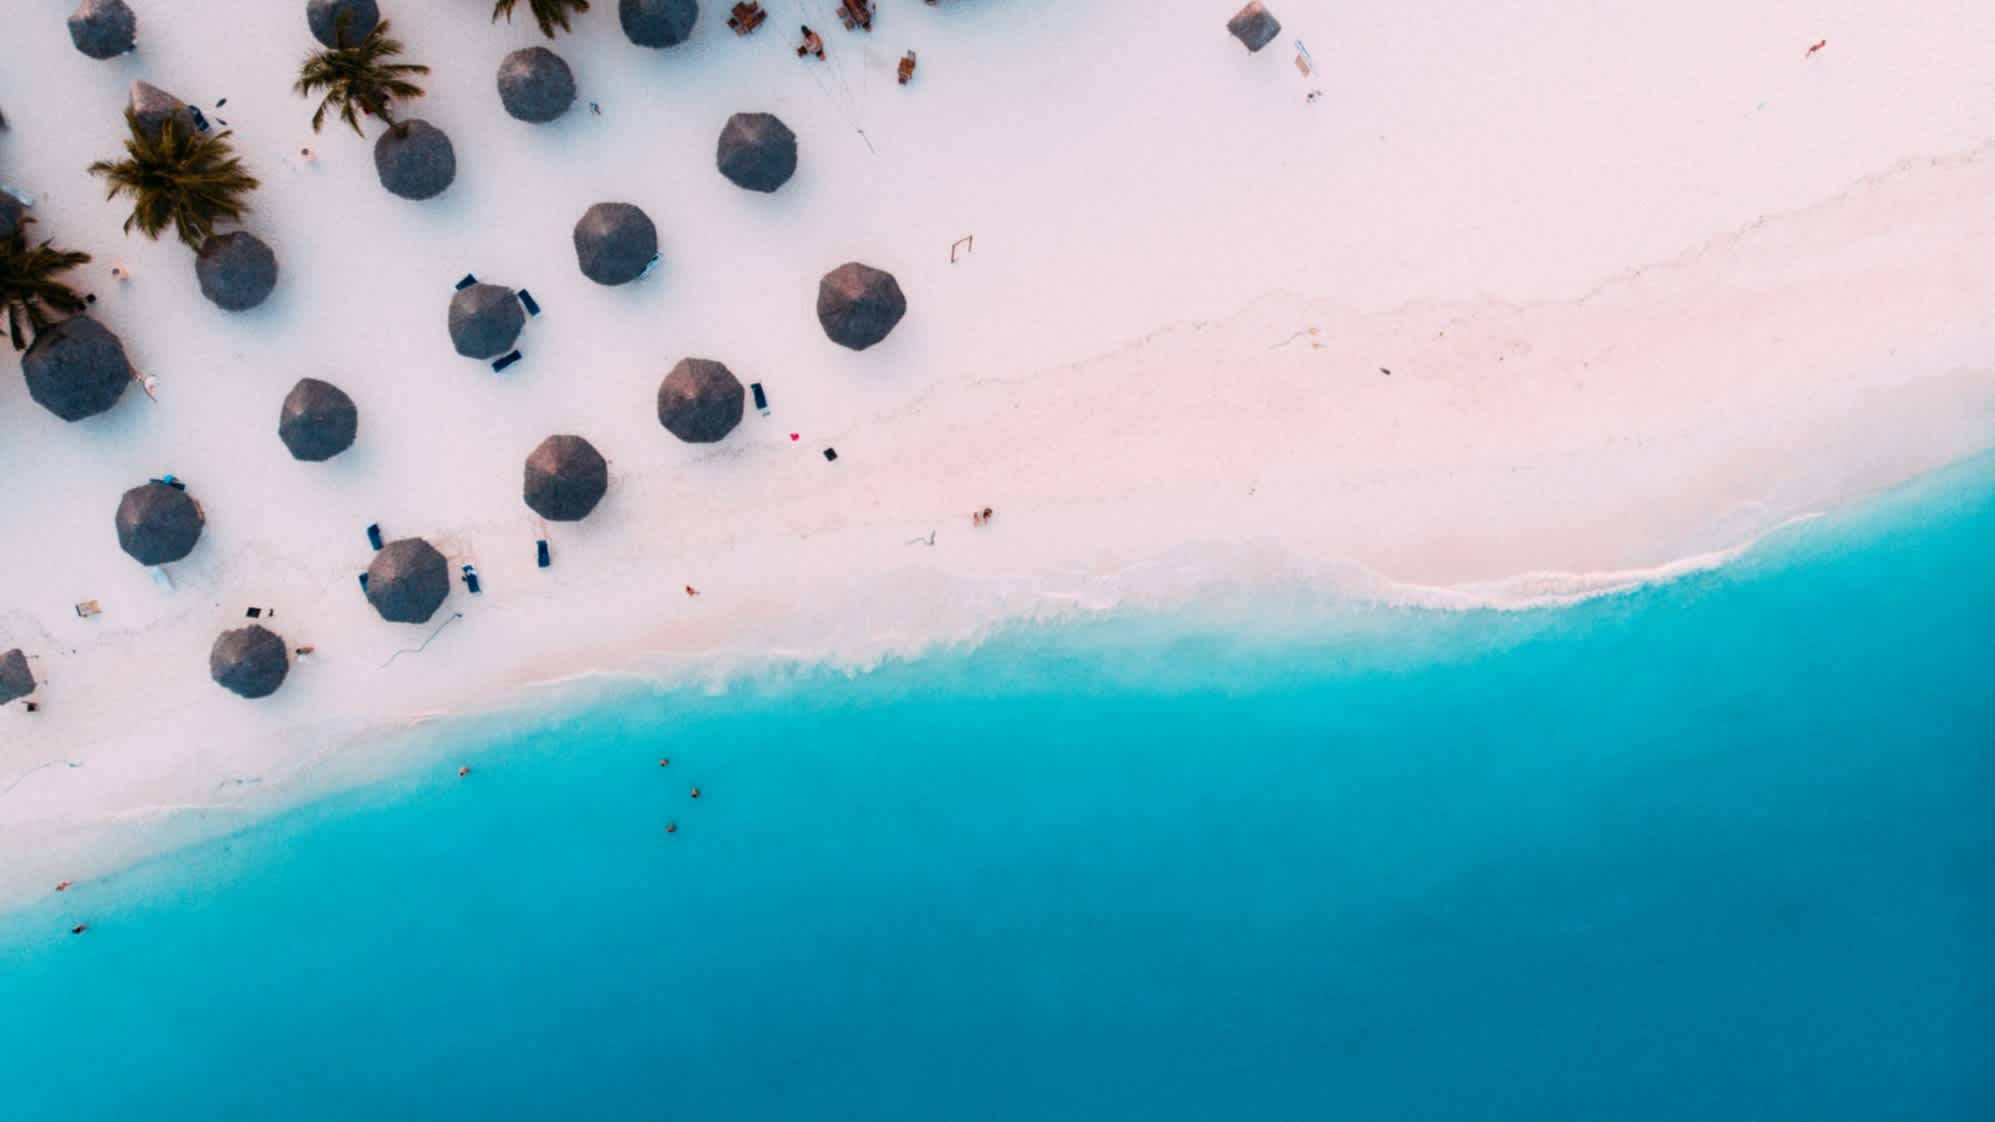 Luftaufnahme des tropischen Sandstrands Kendwa Beach auf Sansibar mit türkisblauem Meer, Sonnenschirmen und Palmen.